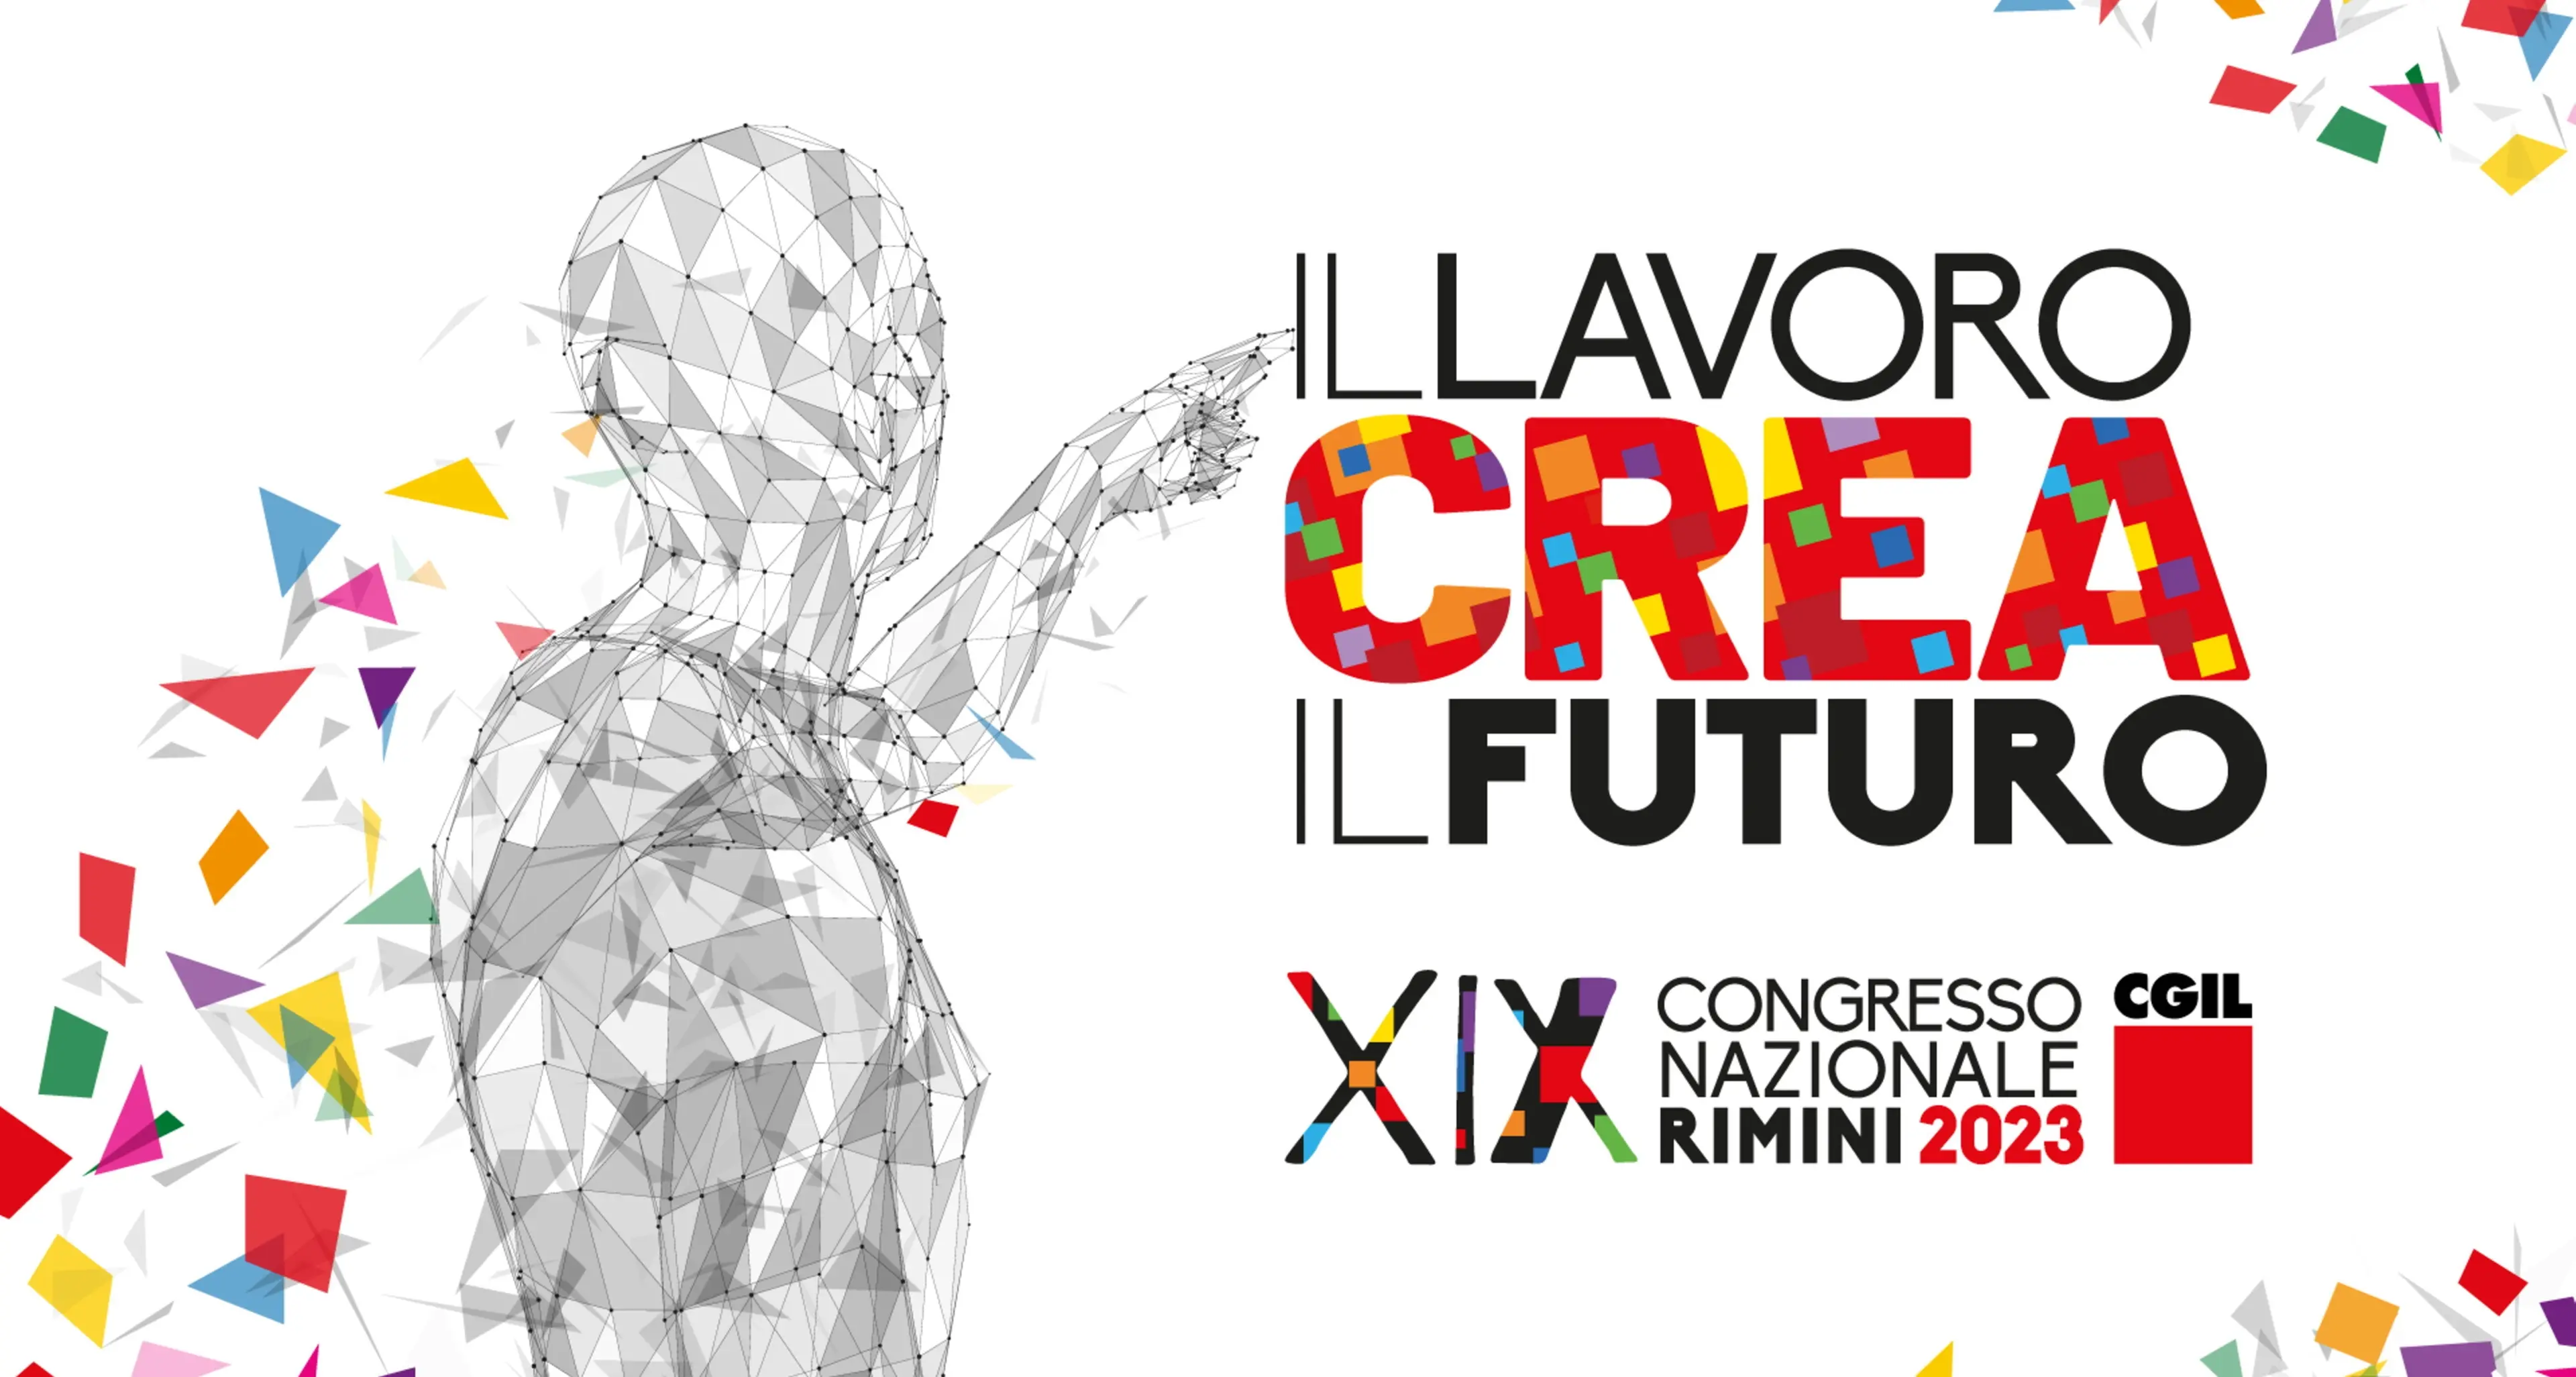 Dal 15 al 18 marzo a Rimini il XIX congresso della CGIL